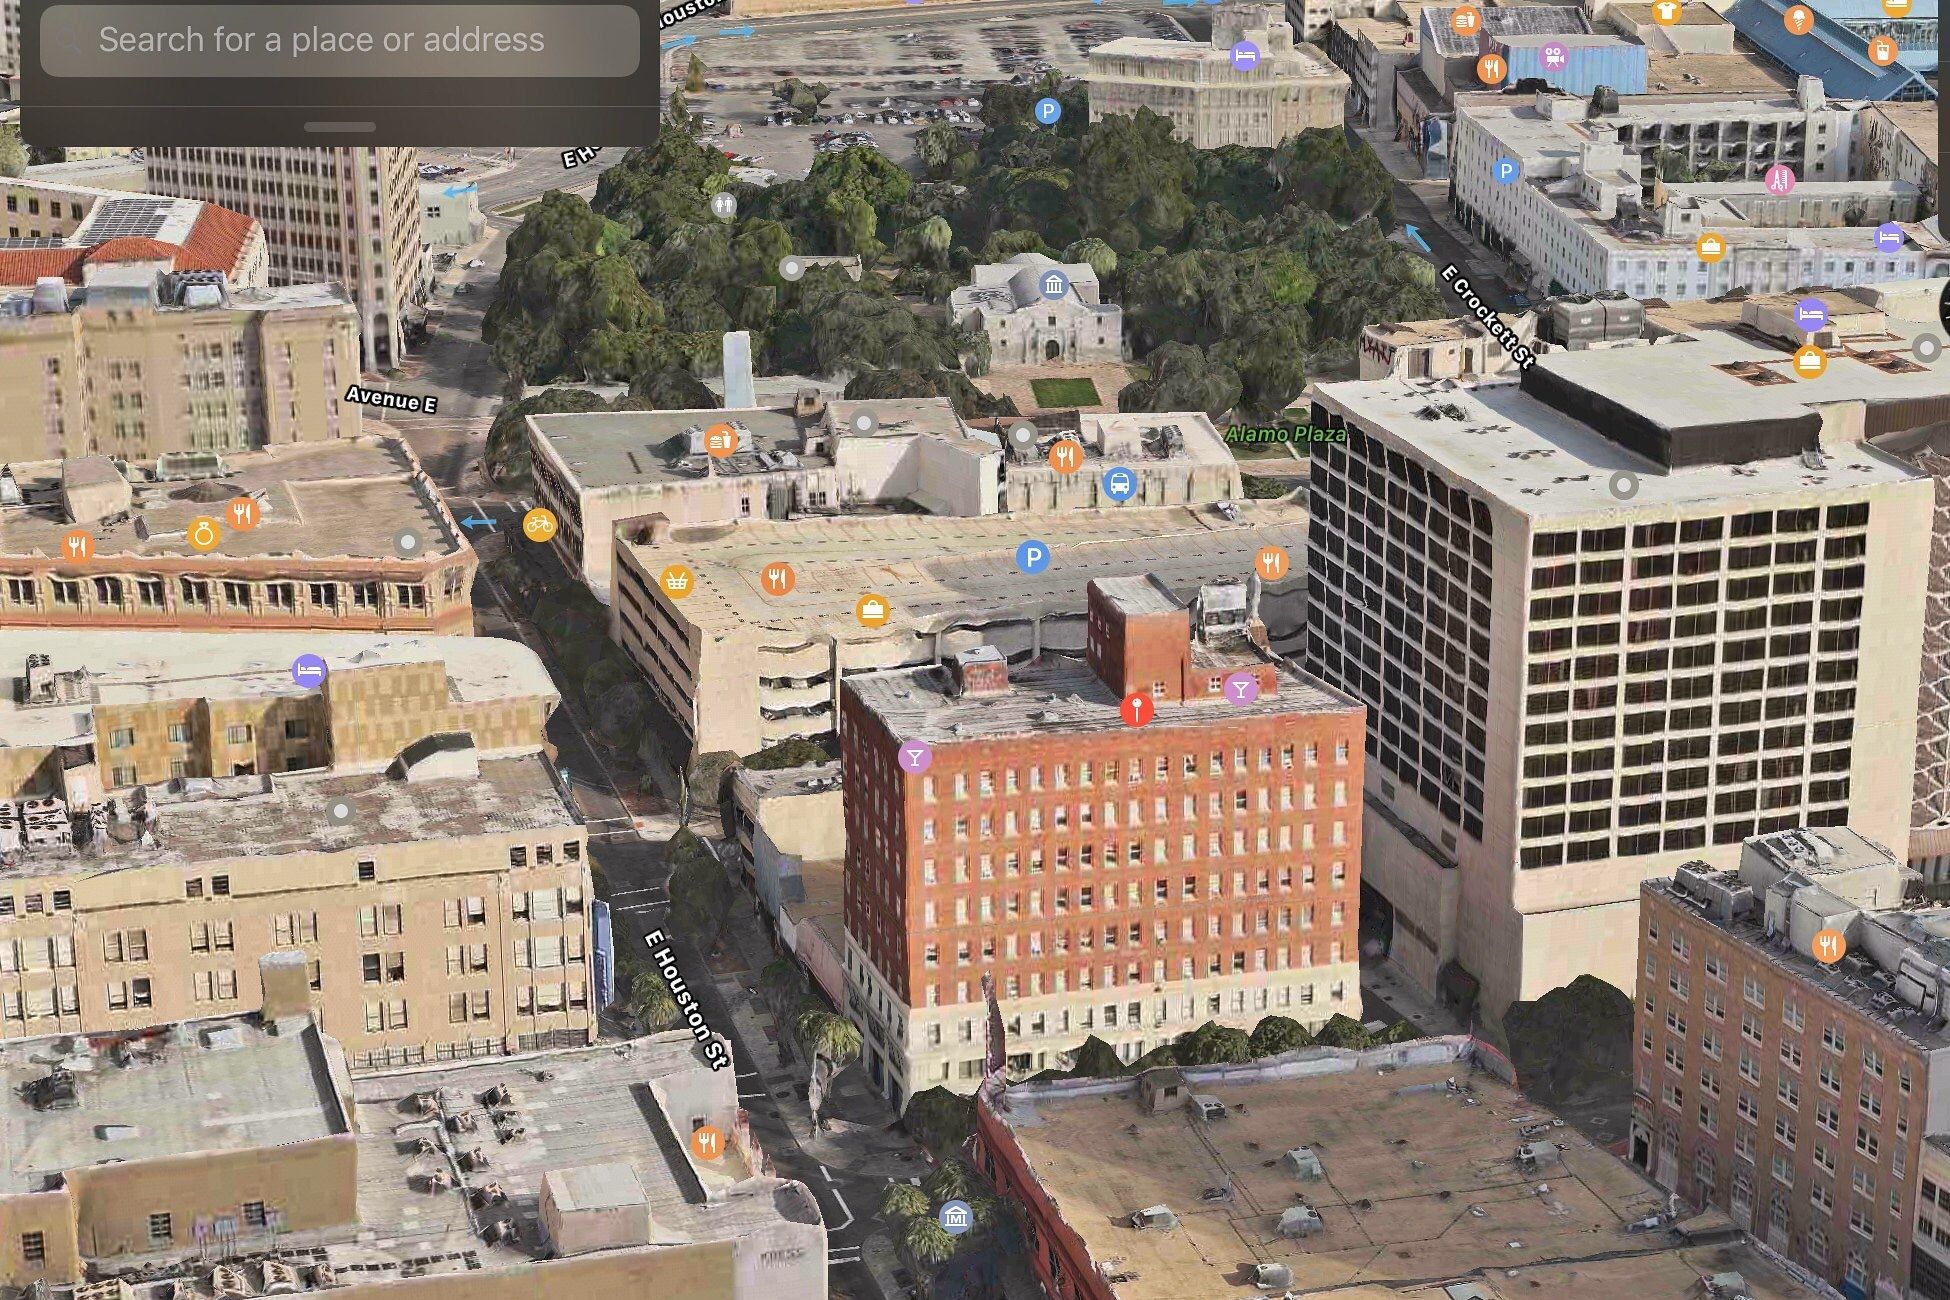 Apple Maps 3D view showing San Antonio